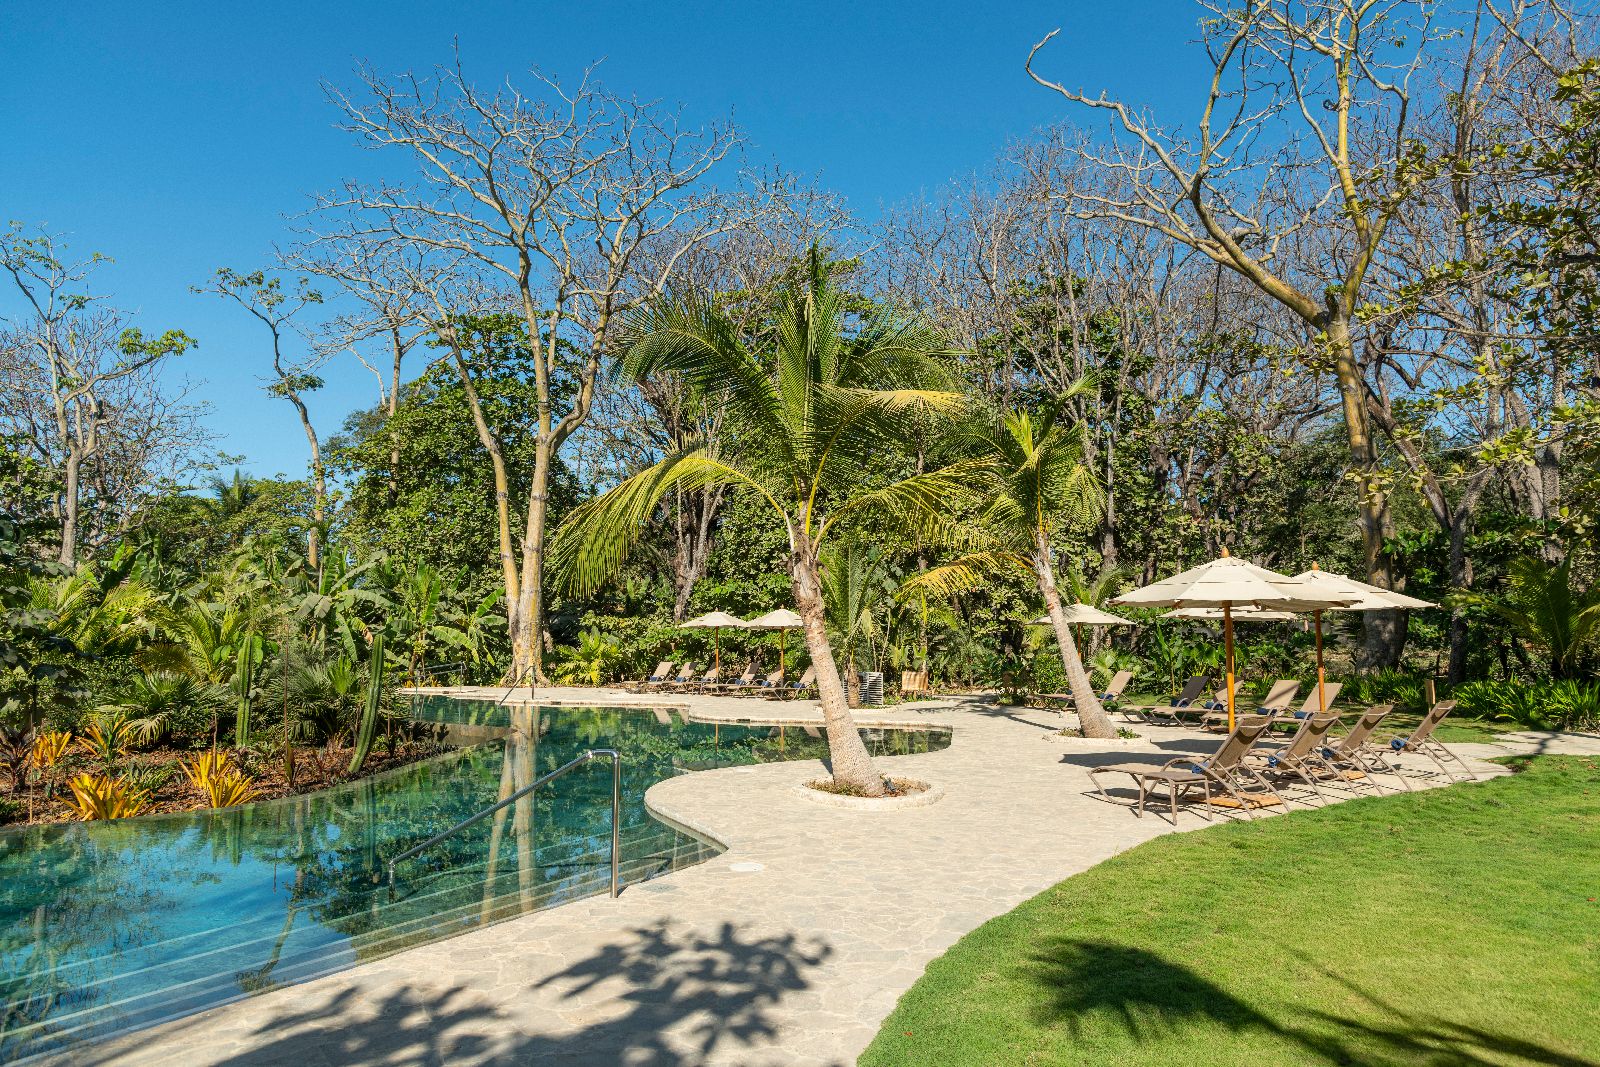 The swimming pool at Nantipa beach resort in Costa Rica